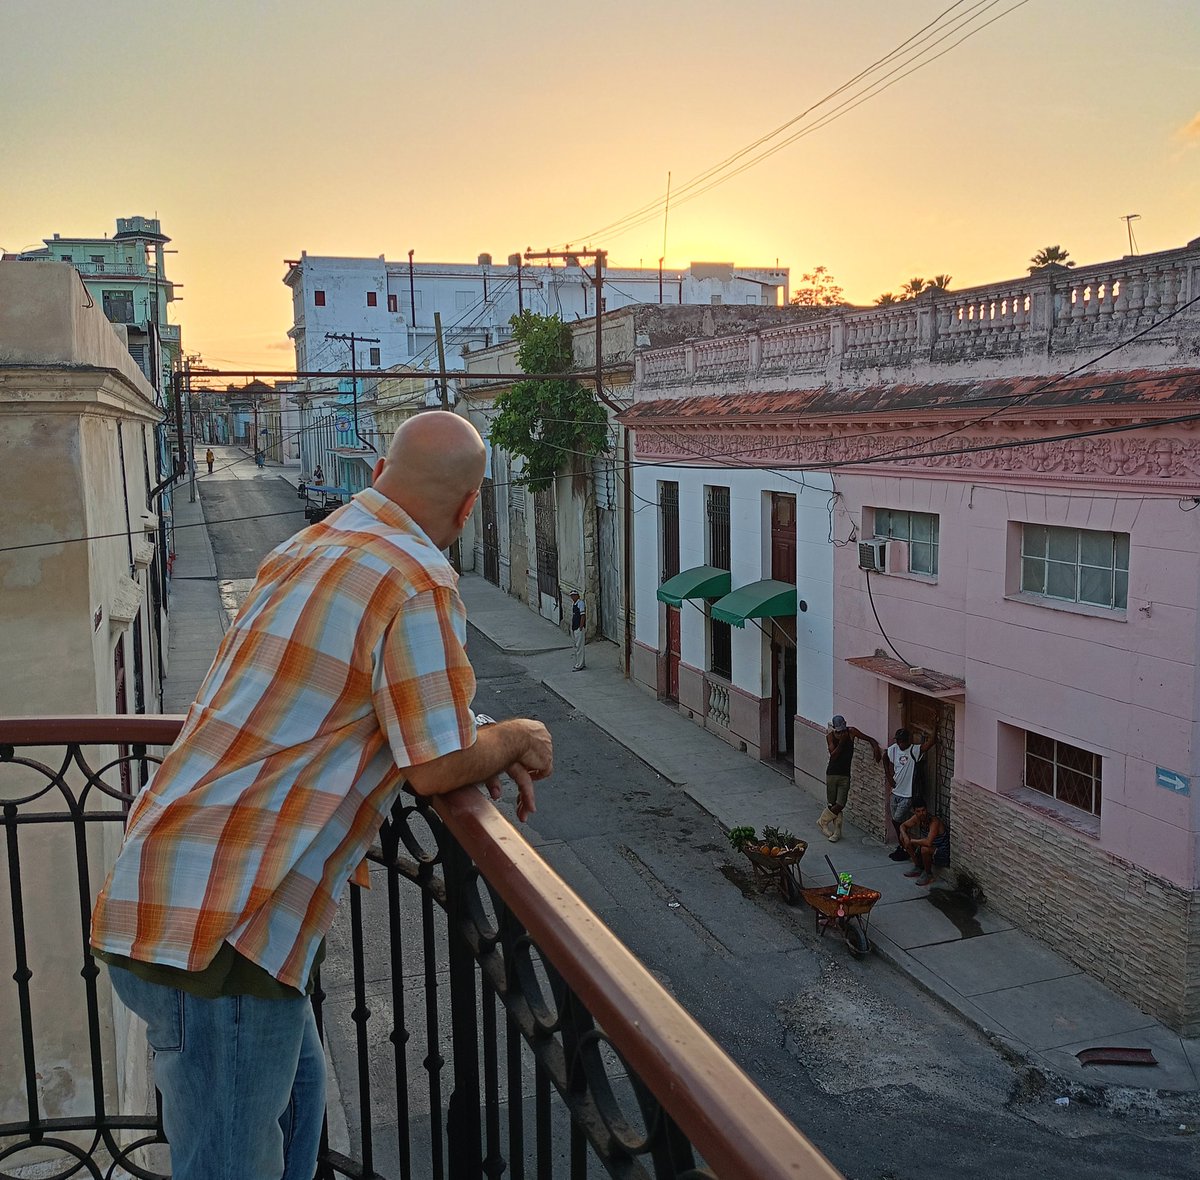 Puesta del sol en Guanabacoa. #Cuba #CDRCuba #SomosDelBarrio